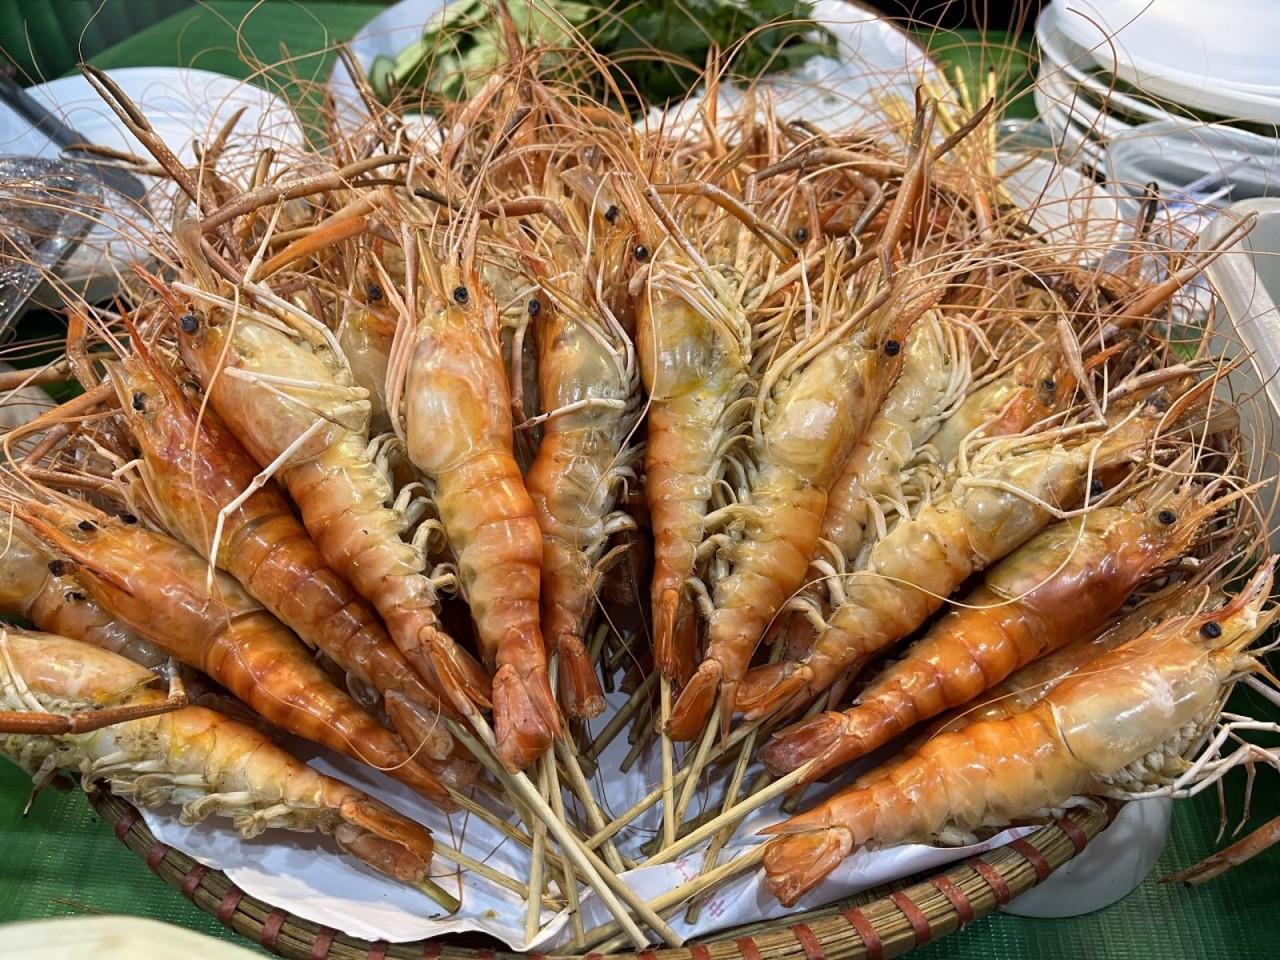 TP Hồ Chí Minh: Hơn 350 món ăn quy tụ tại lễ hội ẩm thực, món ngon